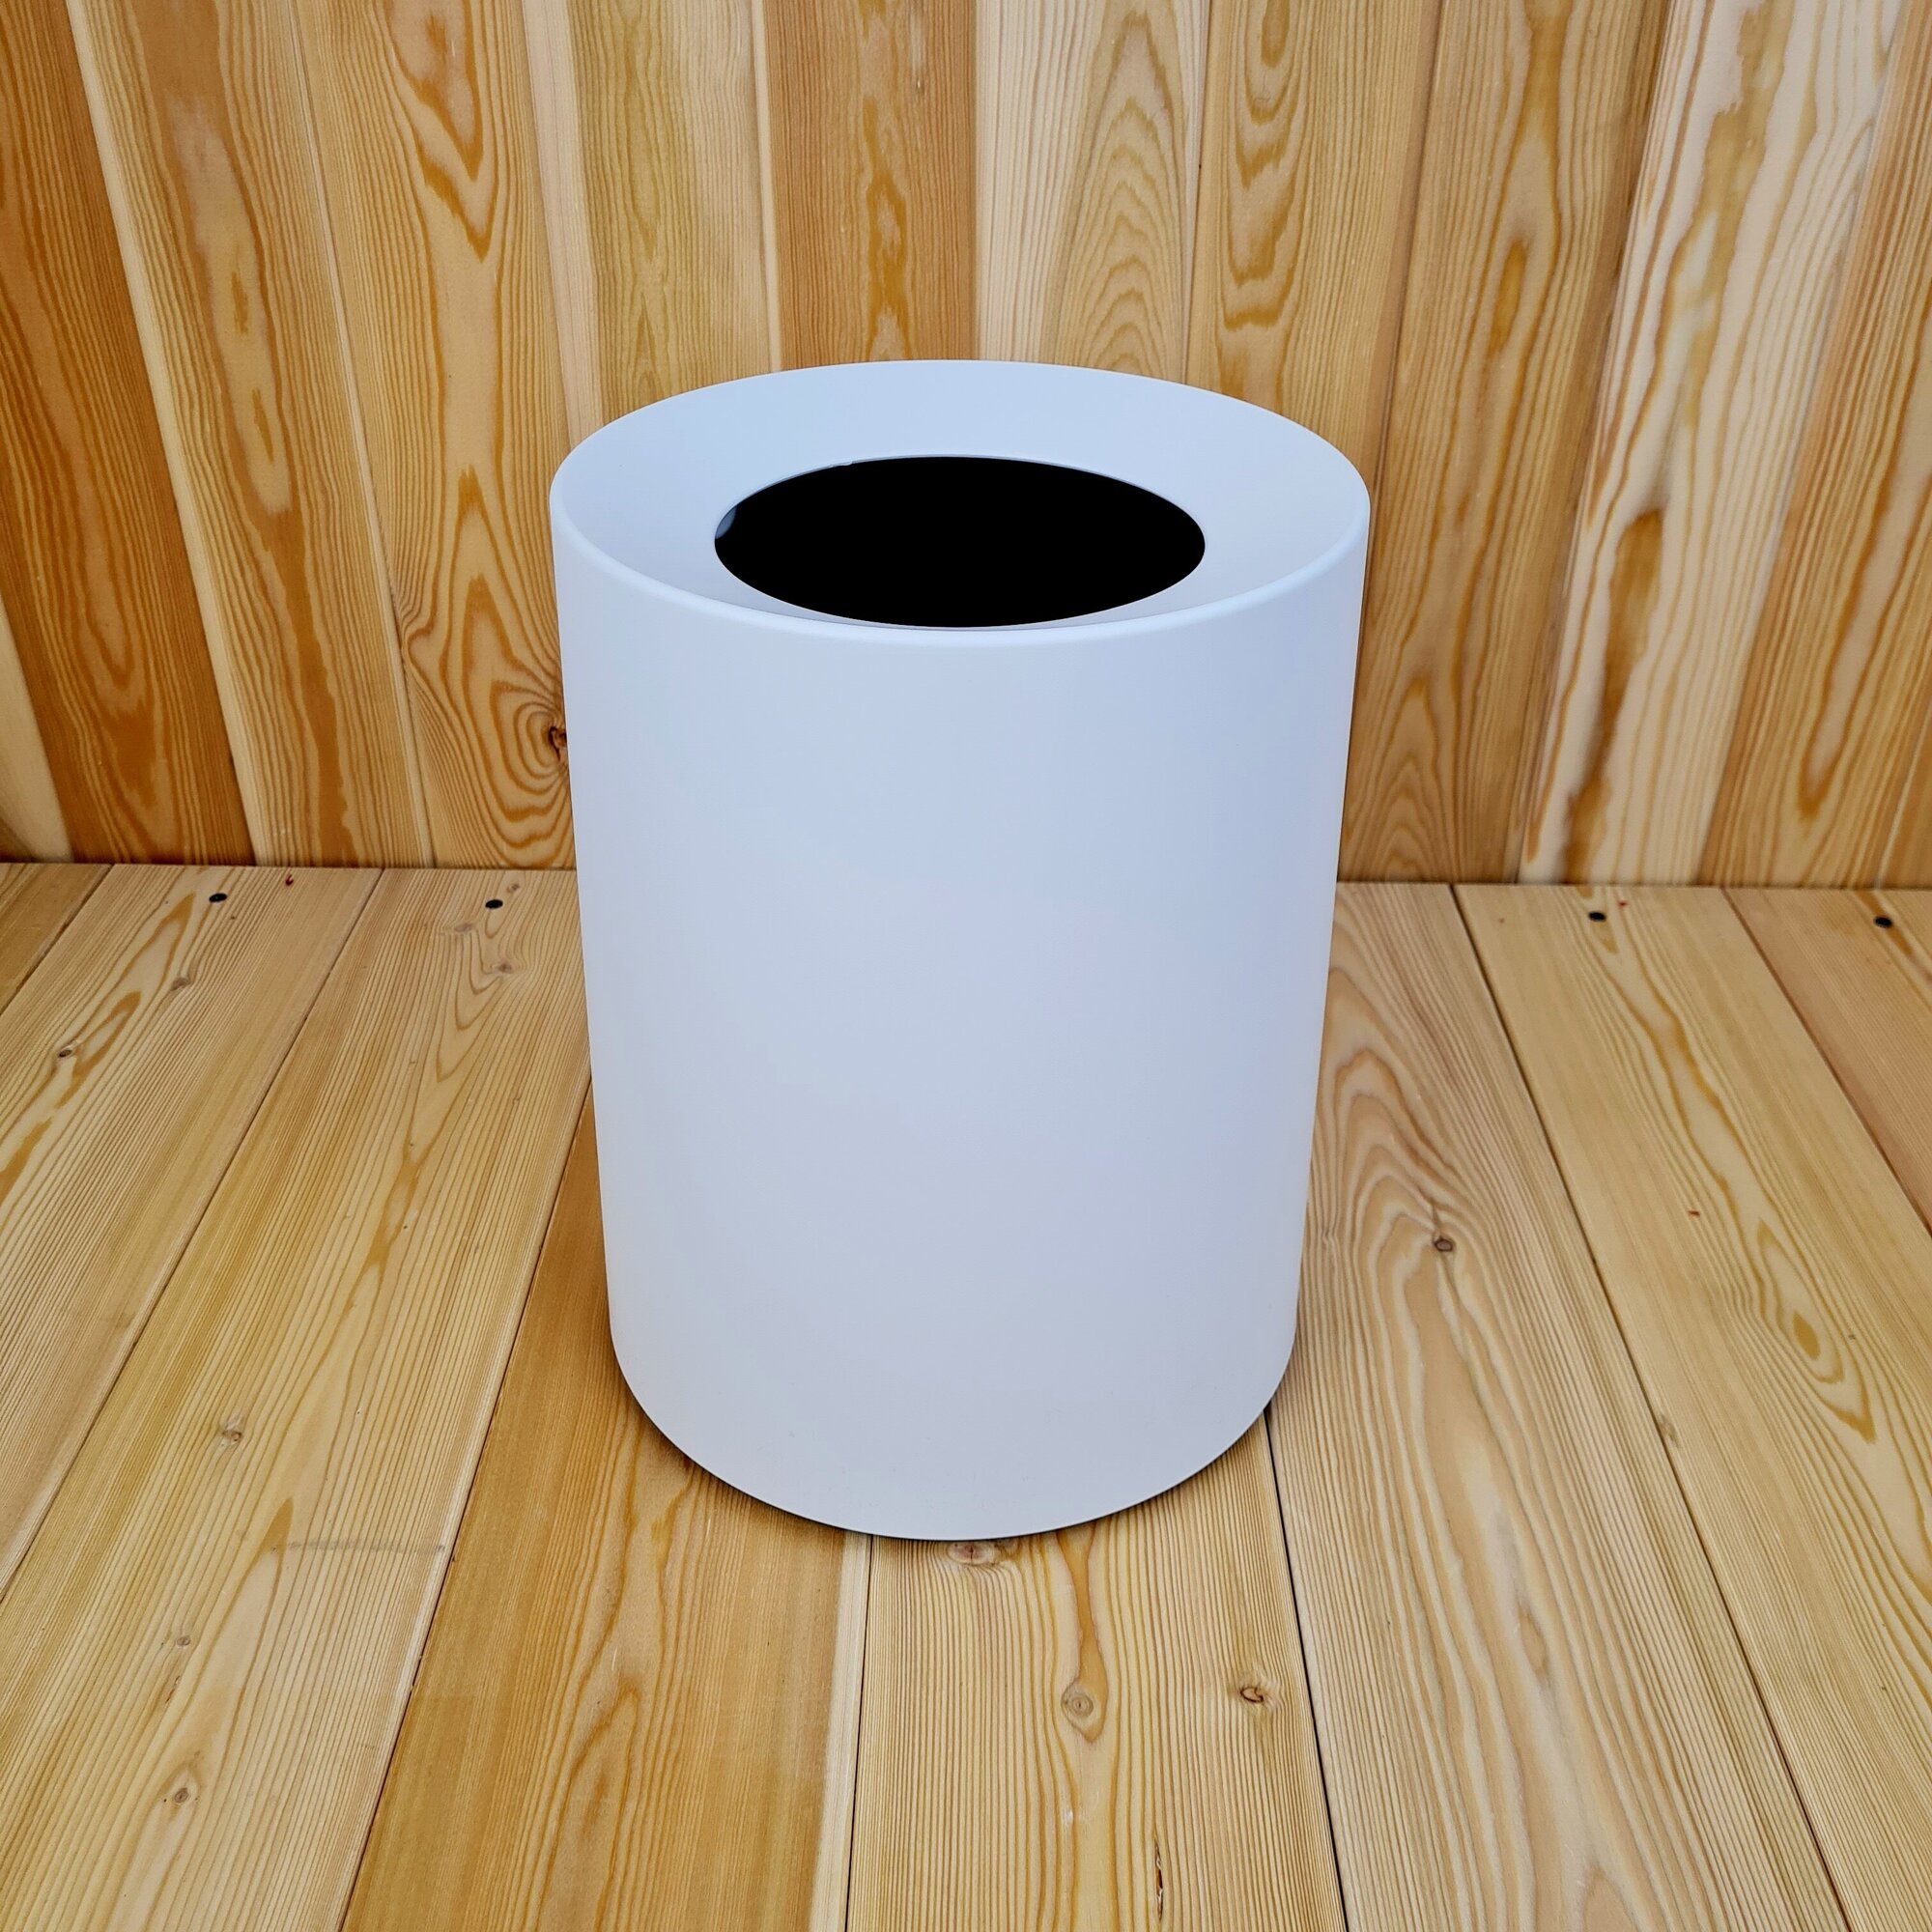 Корзина для бумаг "Sтилъ", с удобной урной внутри и скрытым размещением мусорного мешка. Цвет: Белый.